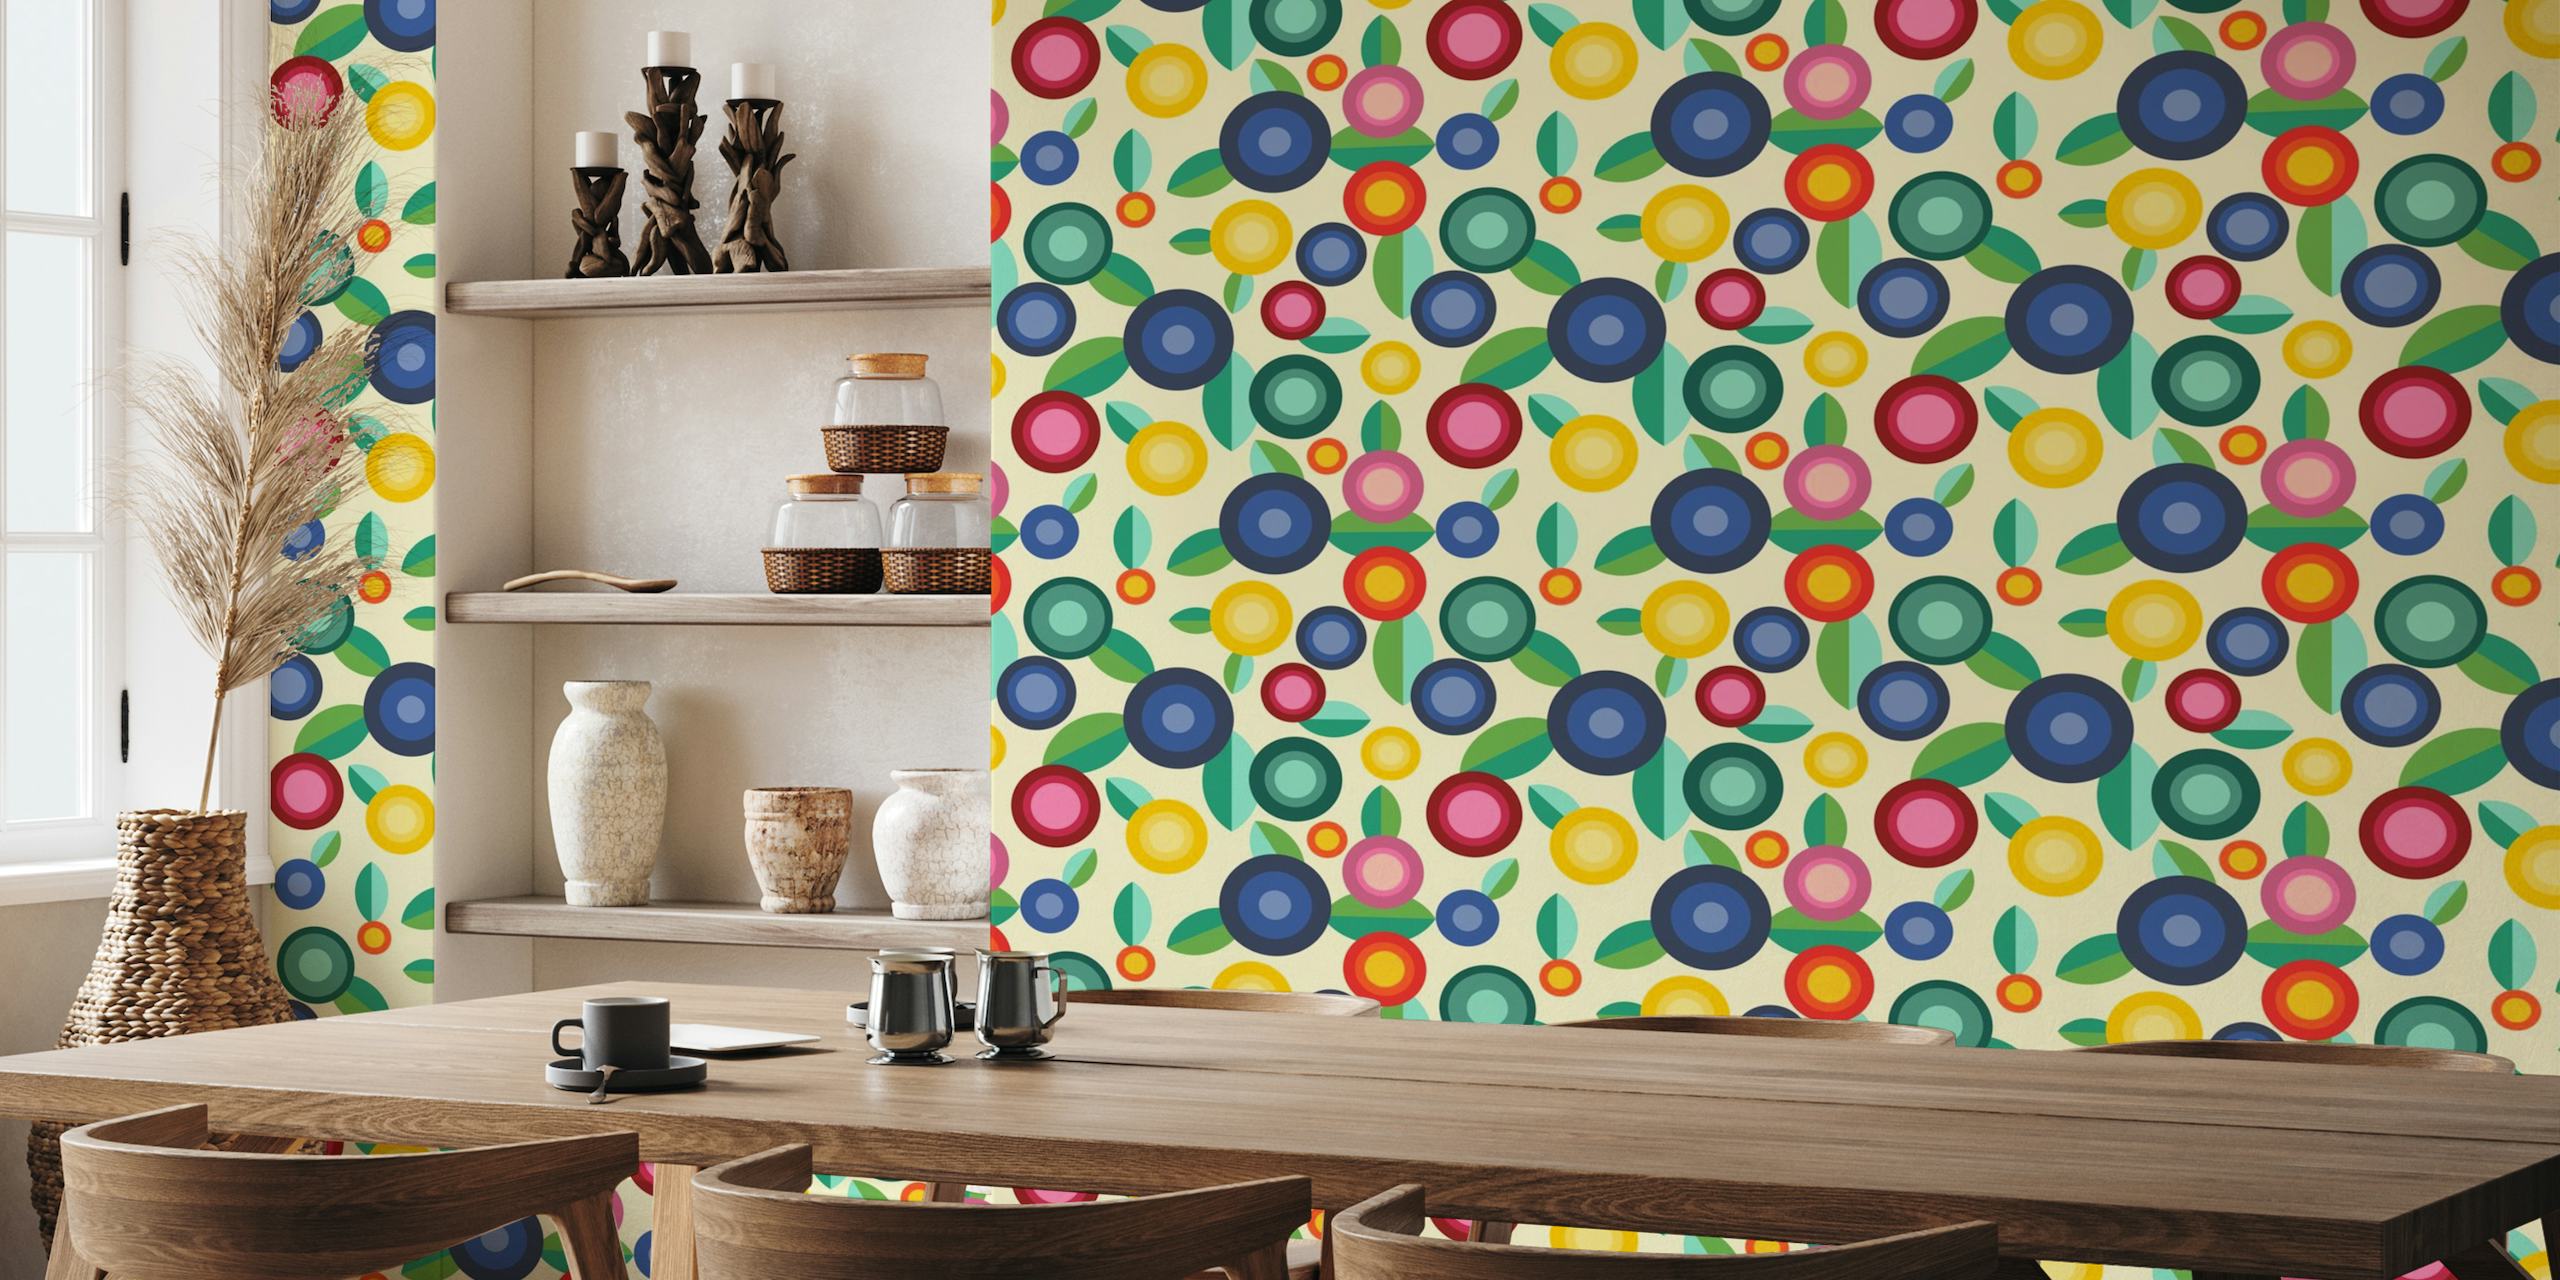 Farbenfrohe abstrakte Fototapete mit floralen und gepunkteten Mustern für moderne Innenräume